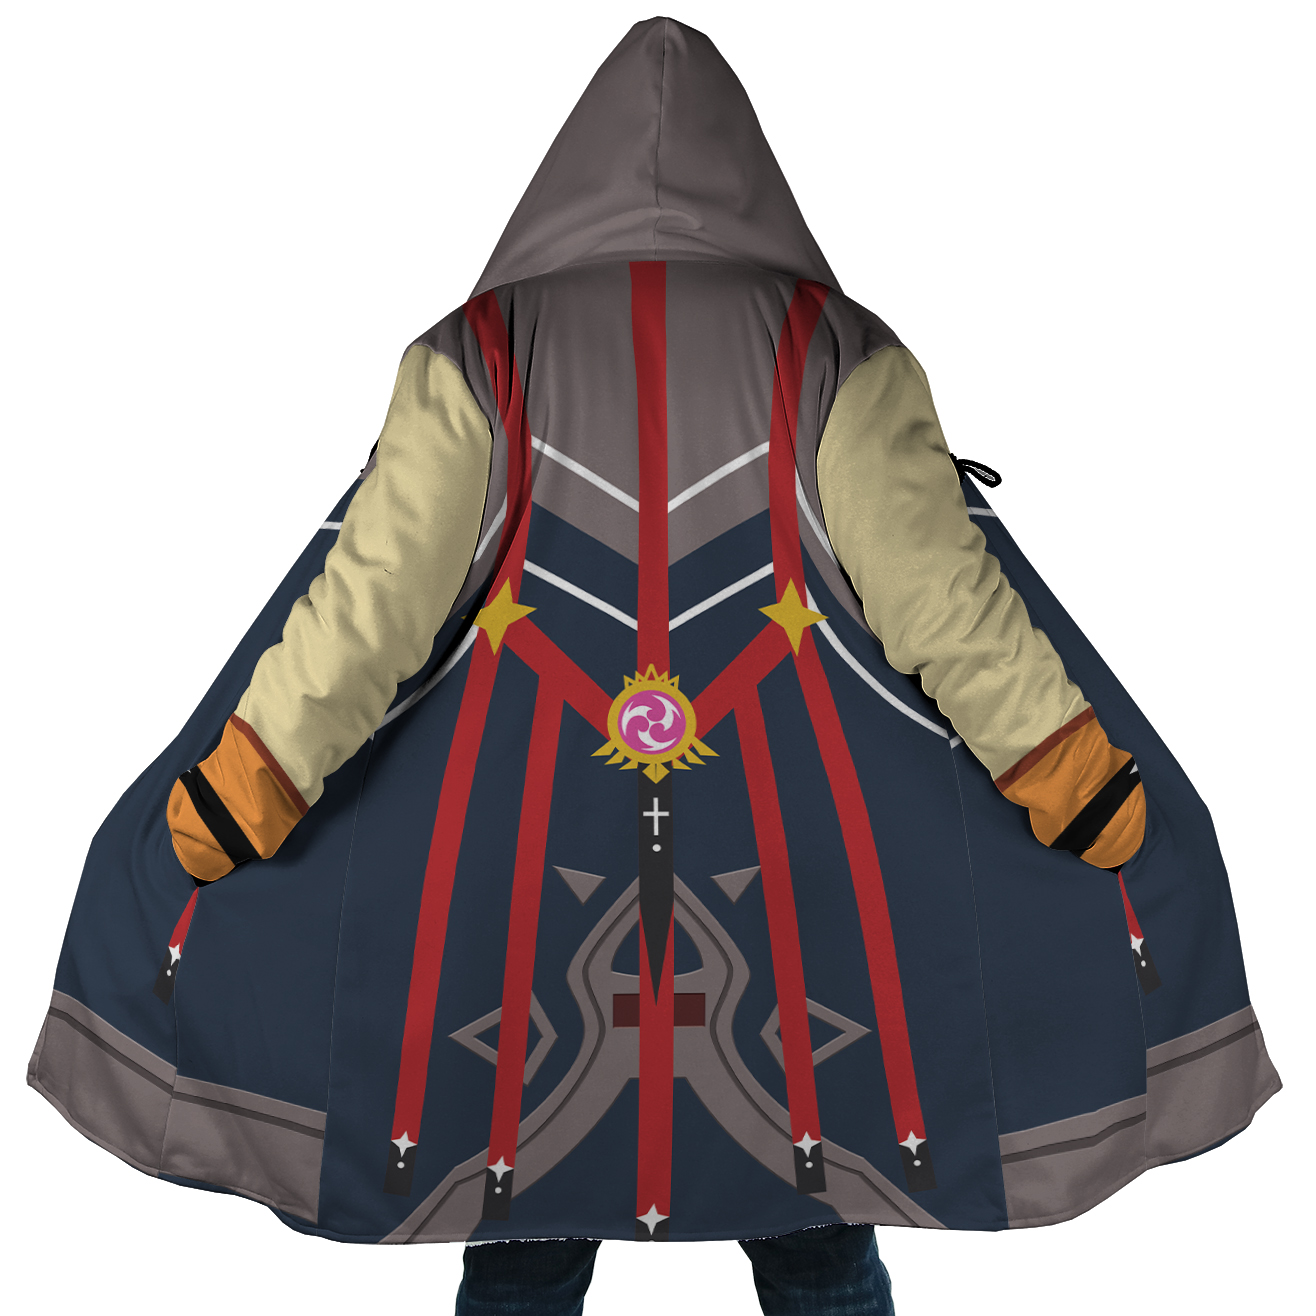 Razor Genshin Impact Cosplay Dream Cloak Coat